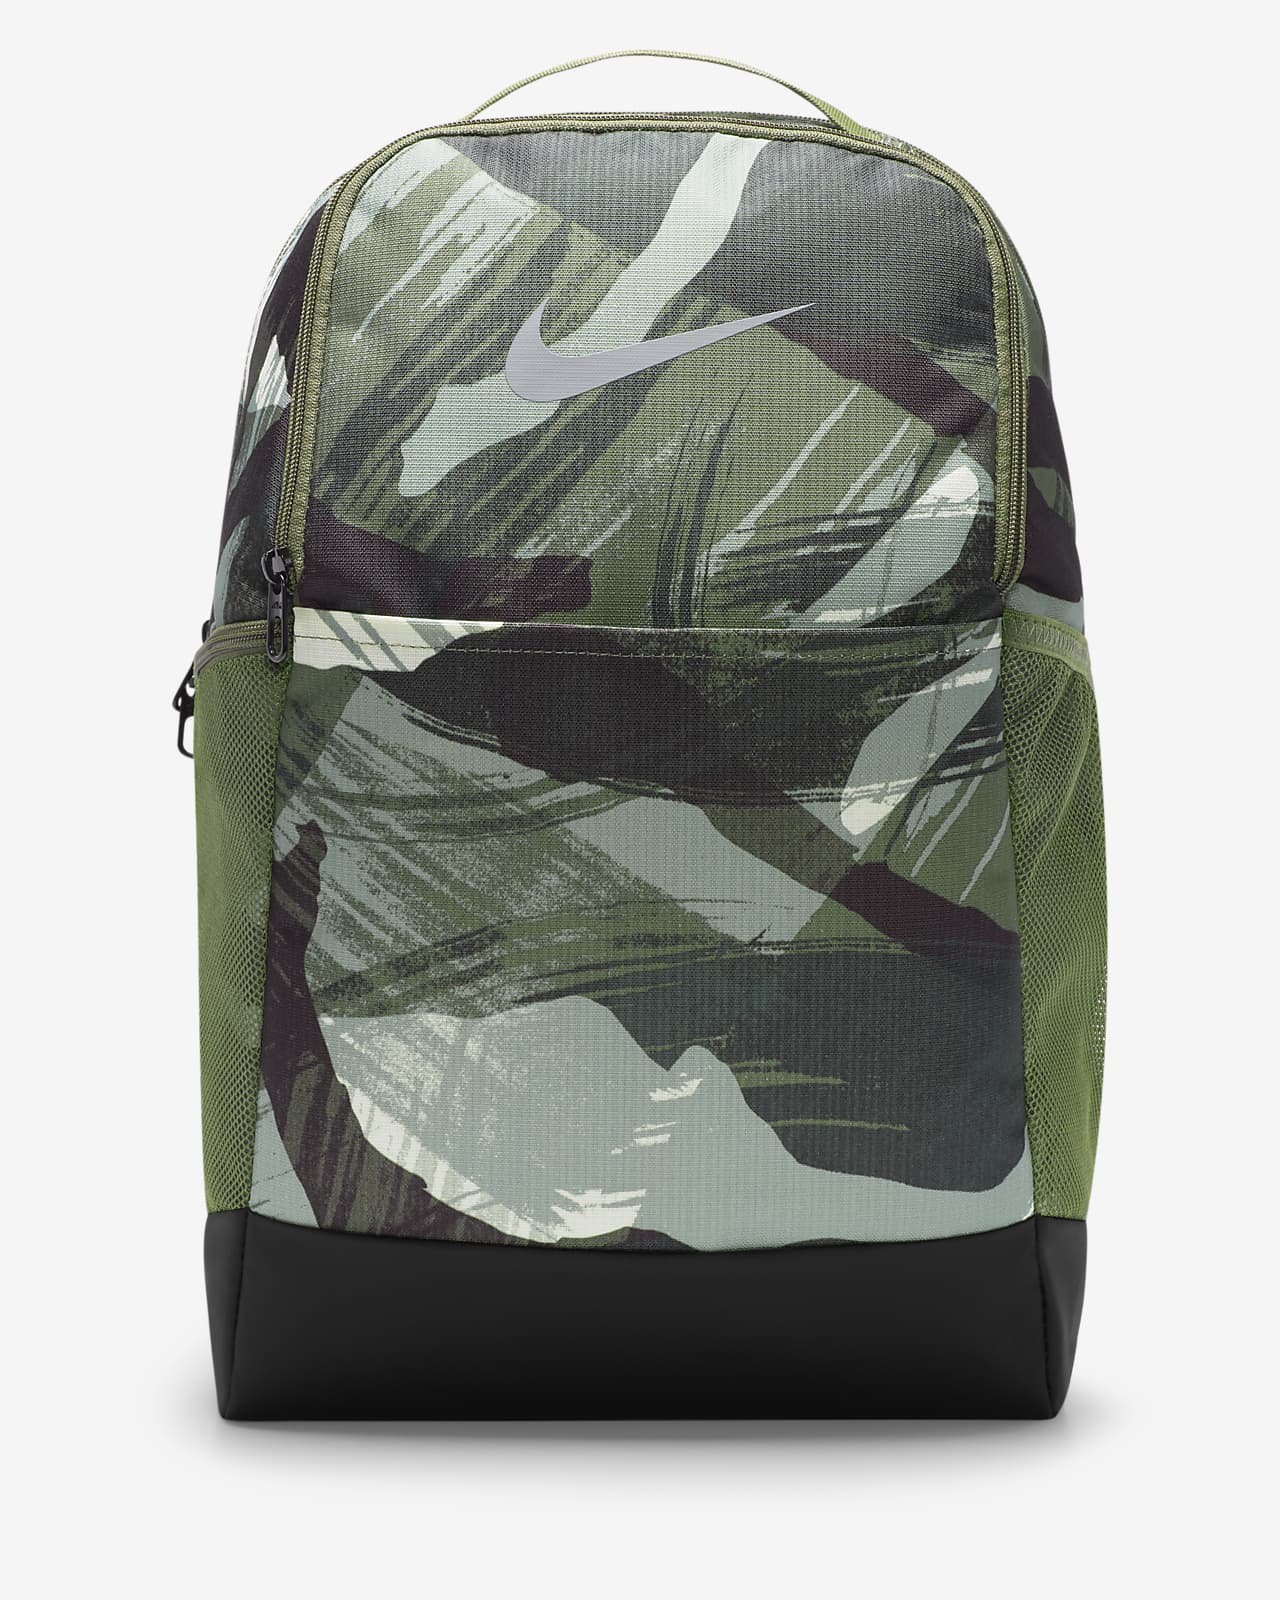 Nike Brasilia Printed Backpack (Medium, 24L). Nike ID